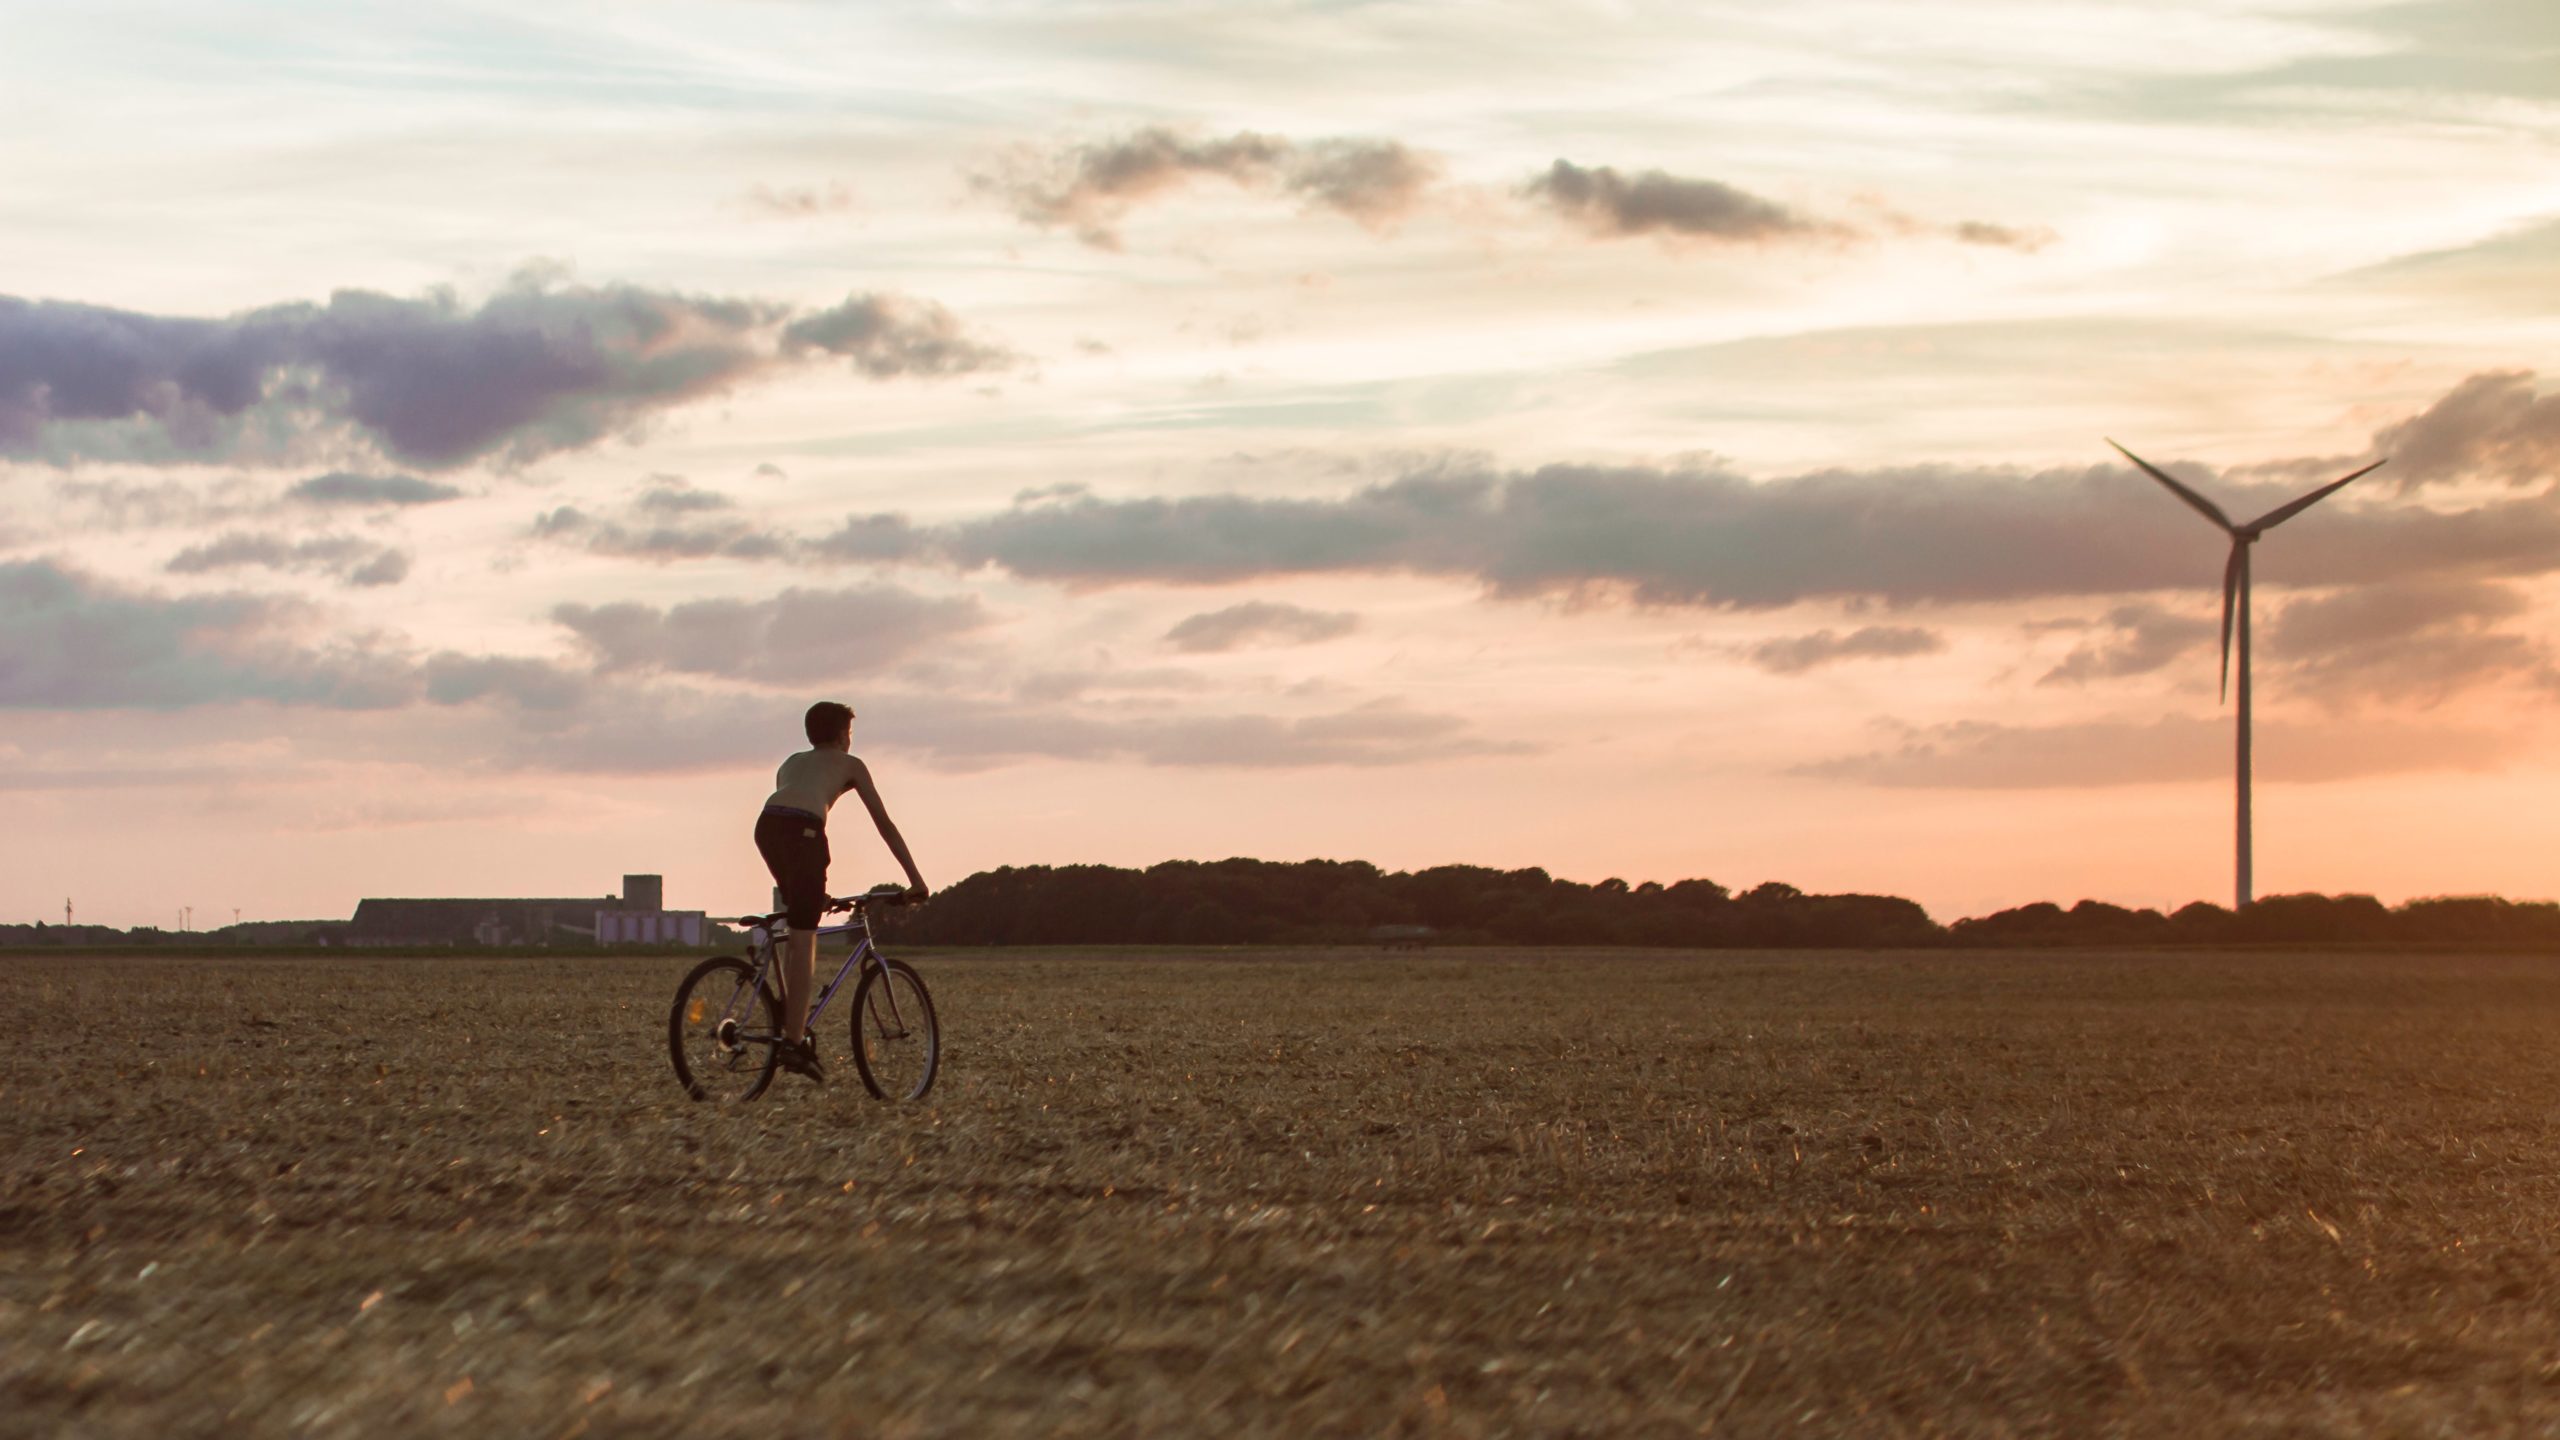 Junge fährt beim Sonnenuntergang auf dem Feld Fahrrad